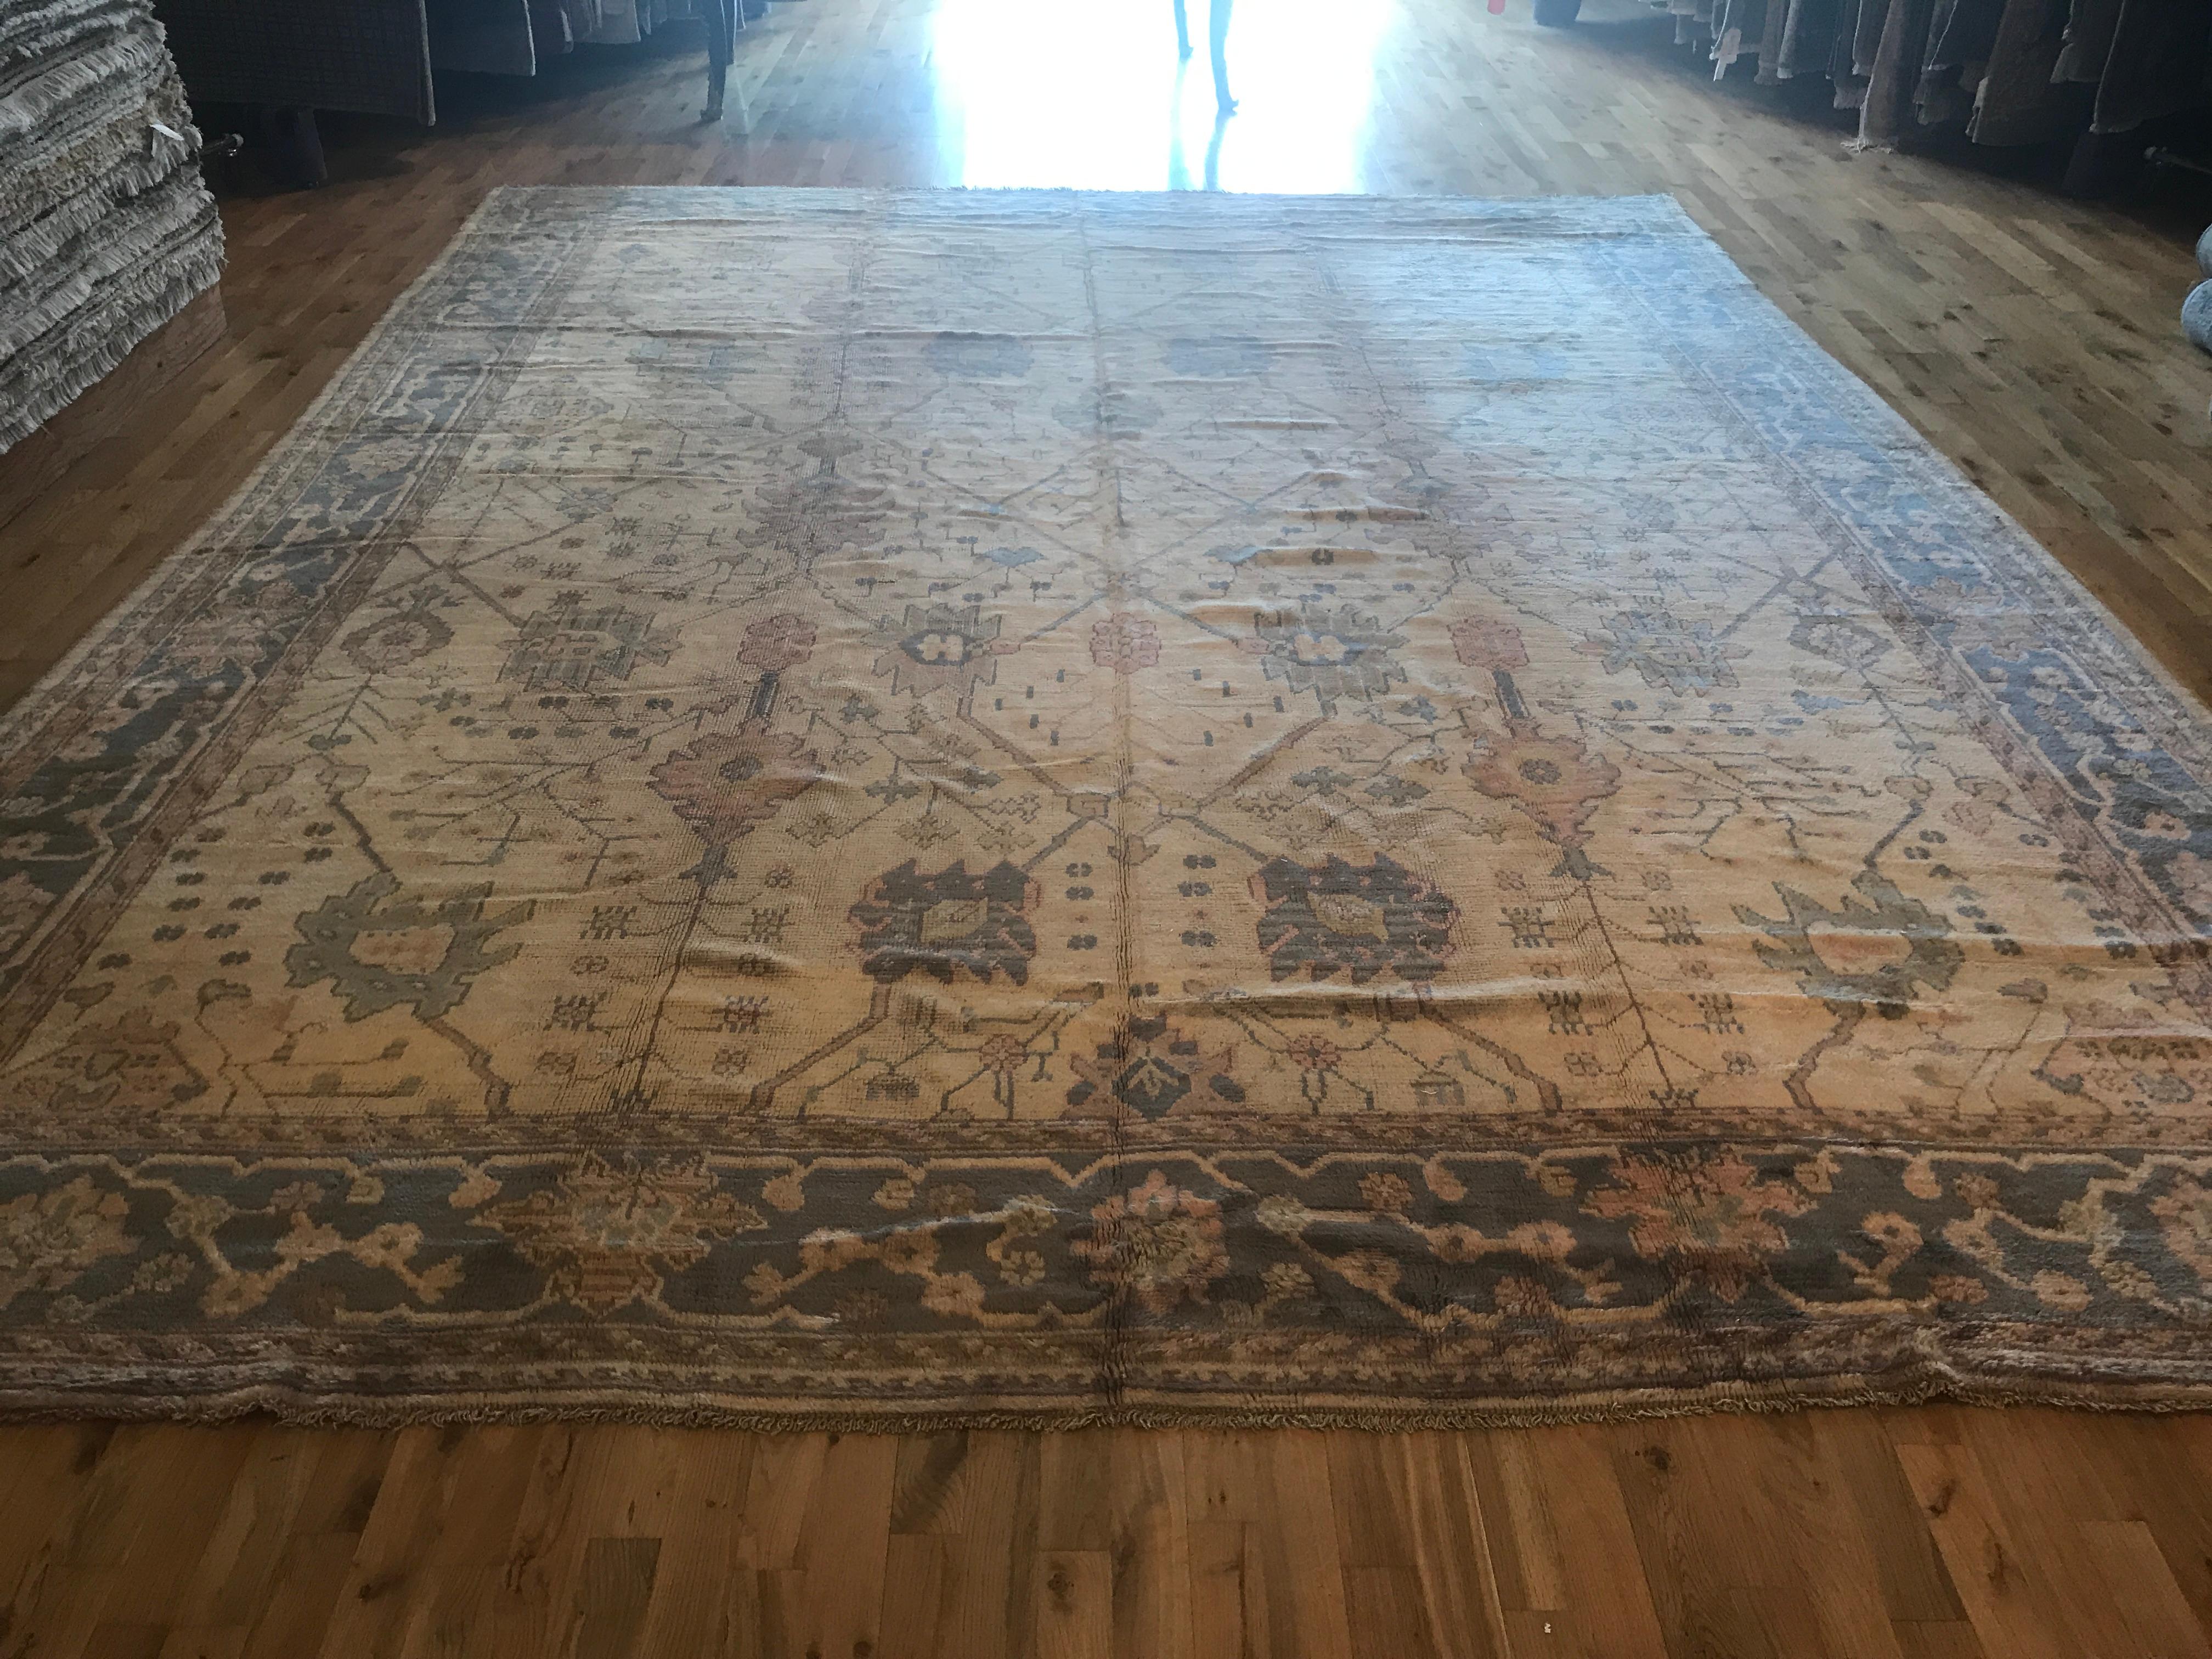 Antique Oushak rug

Measurement: 11' x 13'6